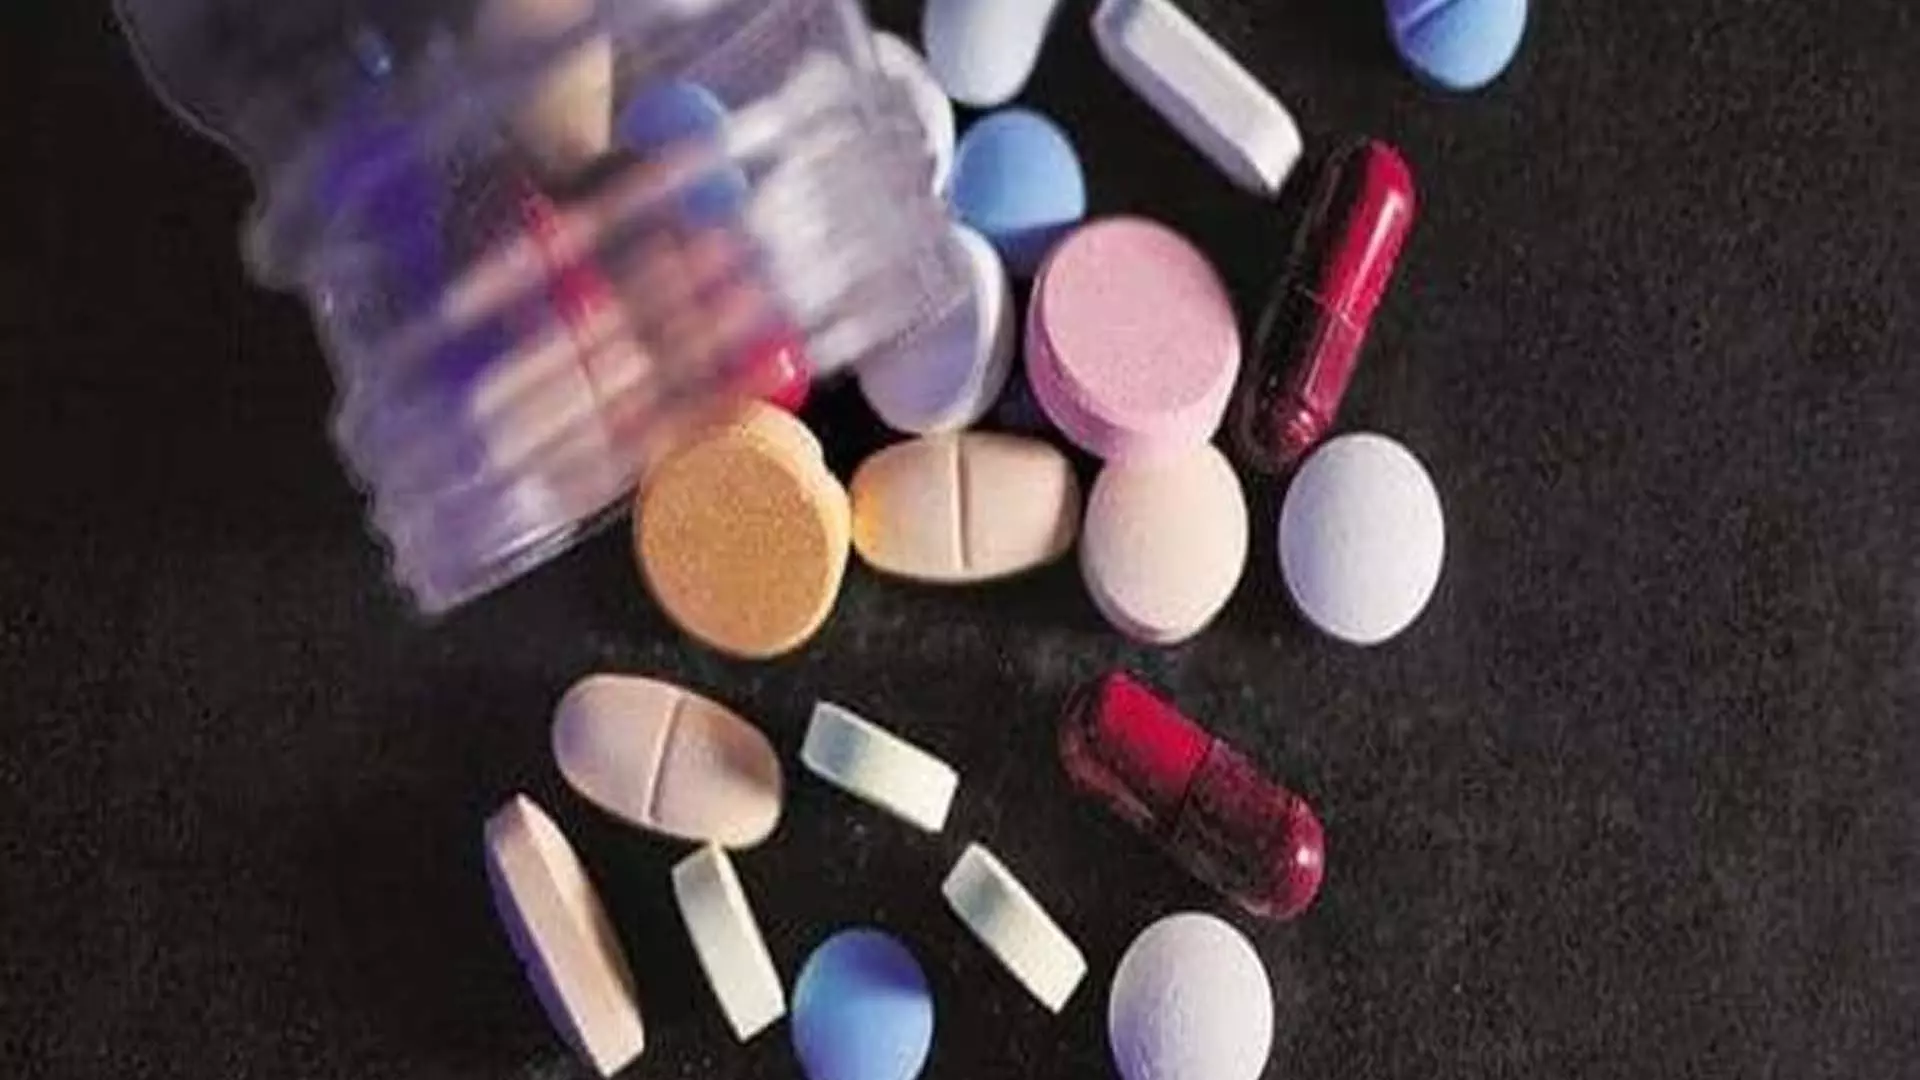 एंटीबायोटिक दवाओं के दुरुपयोग पर सरकार की नजर, DCGI ने 2 हफ्ते में मांगी रिपोर्ट